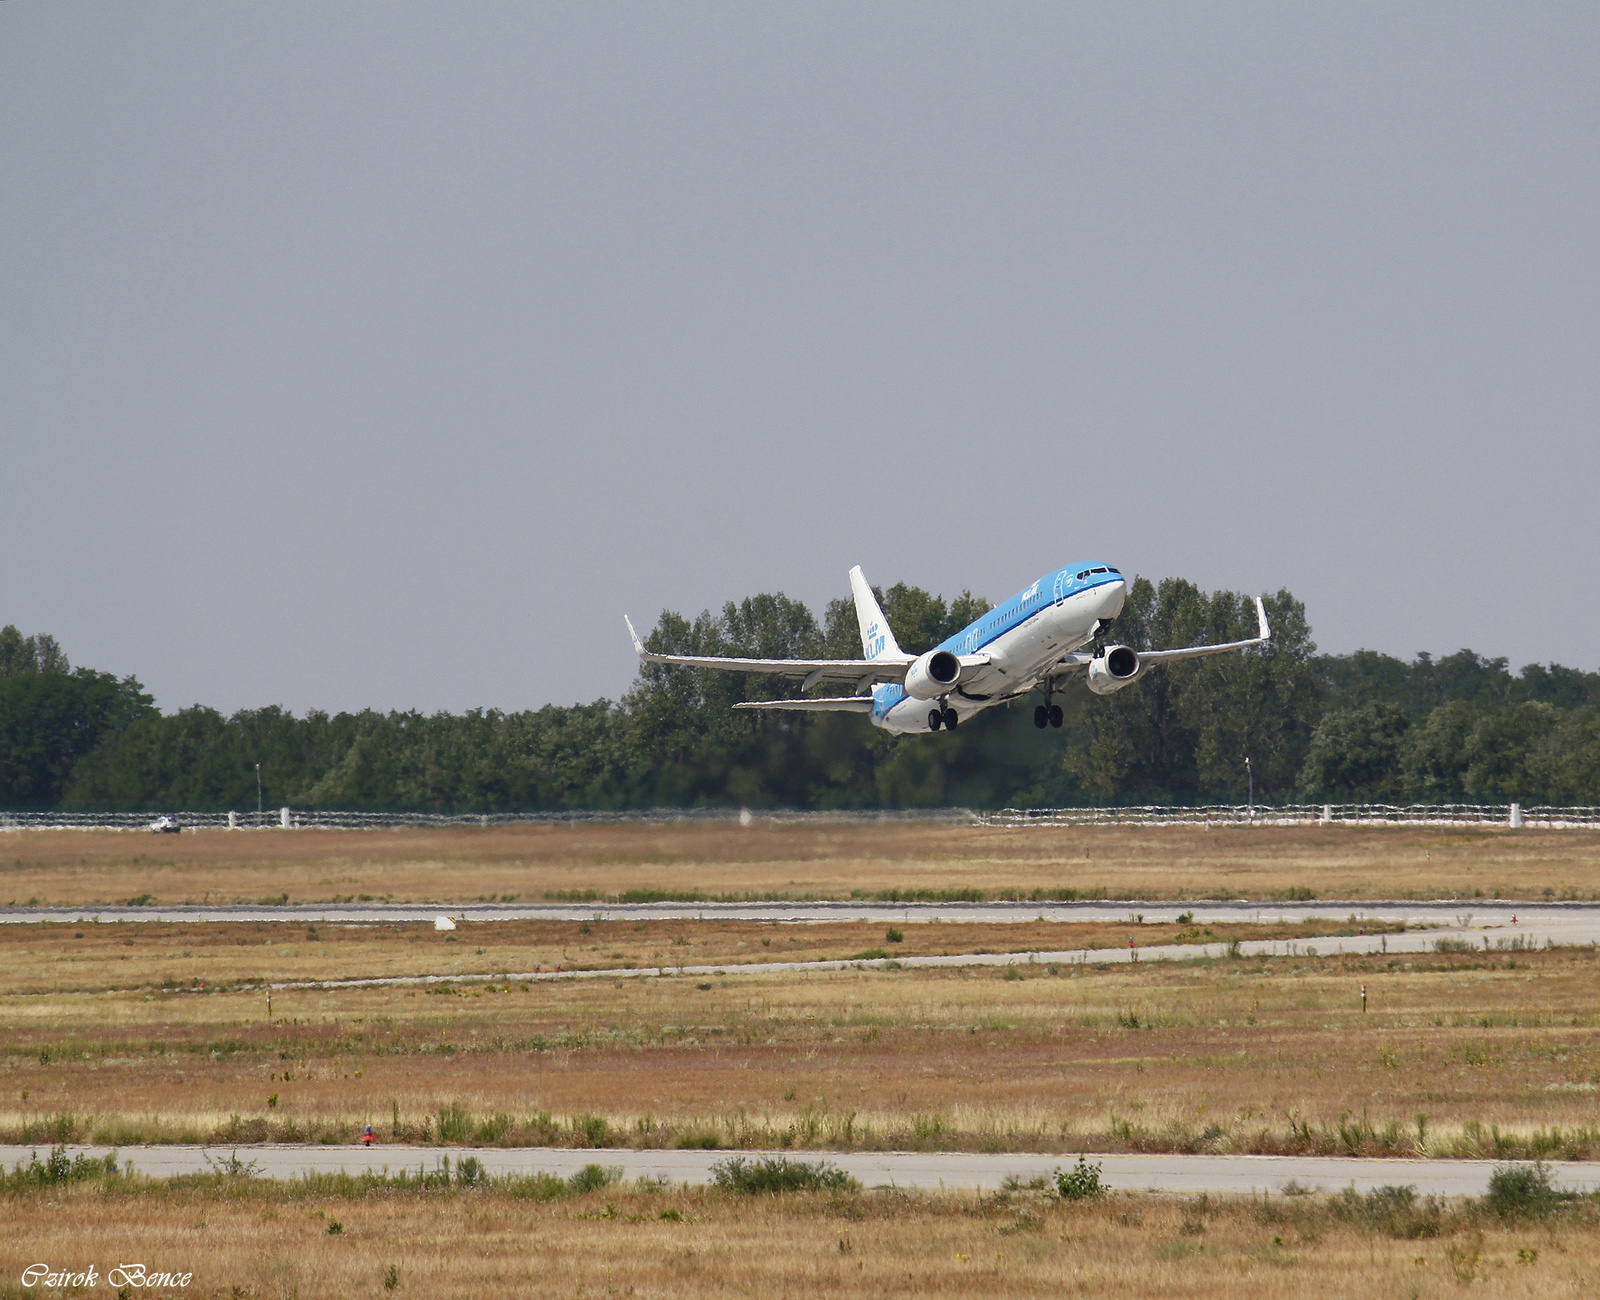 A KLM gépe felszállsá közben